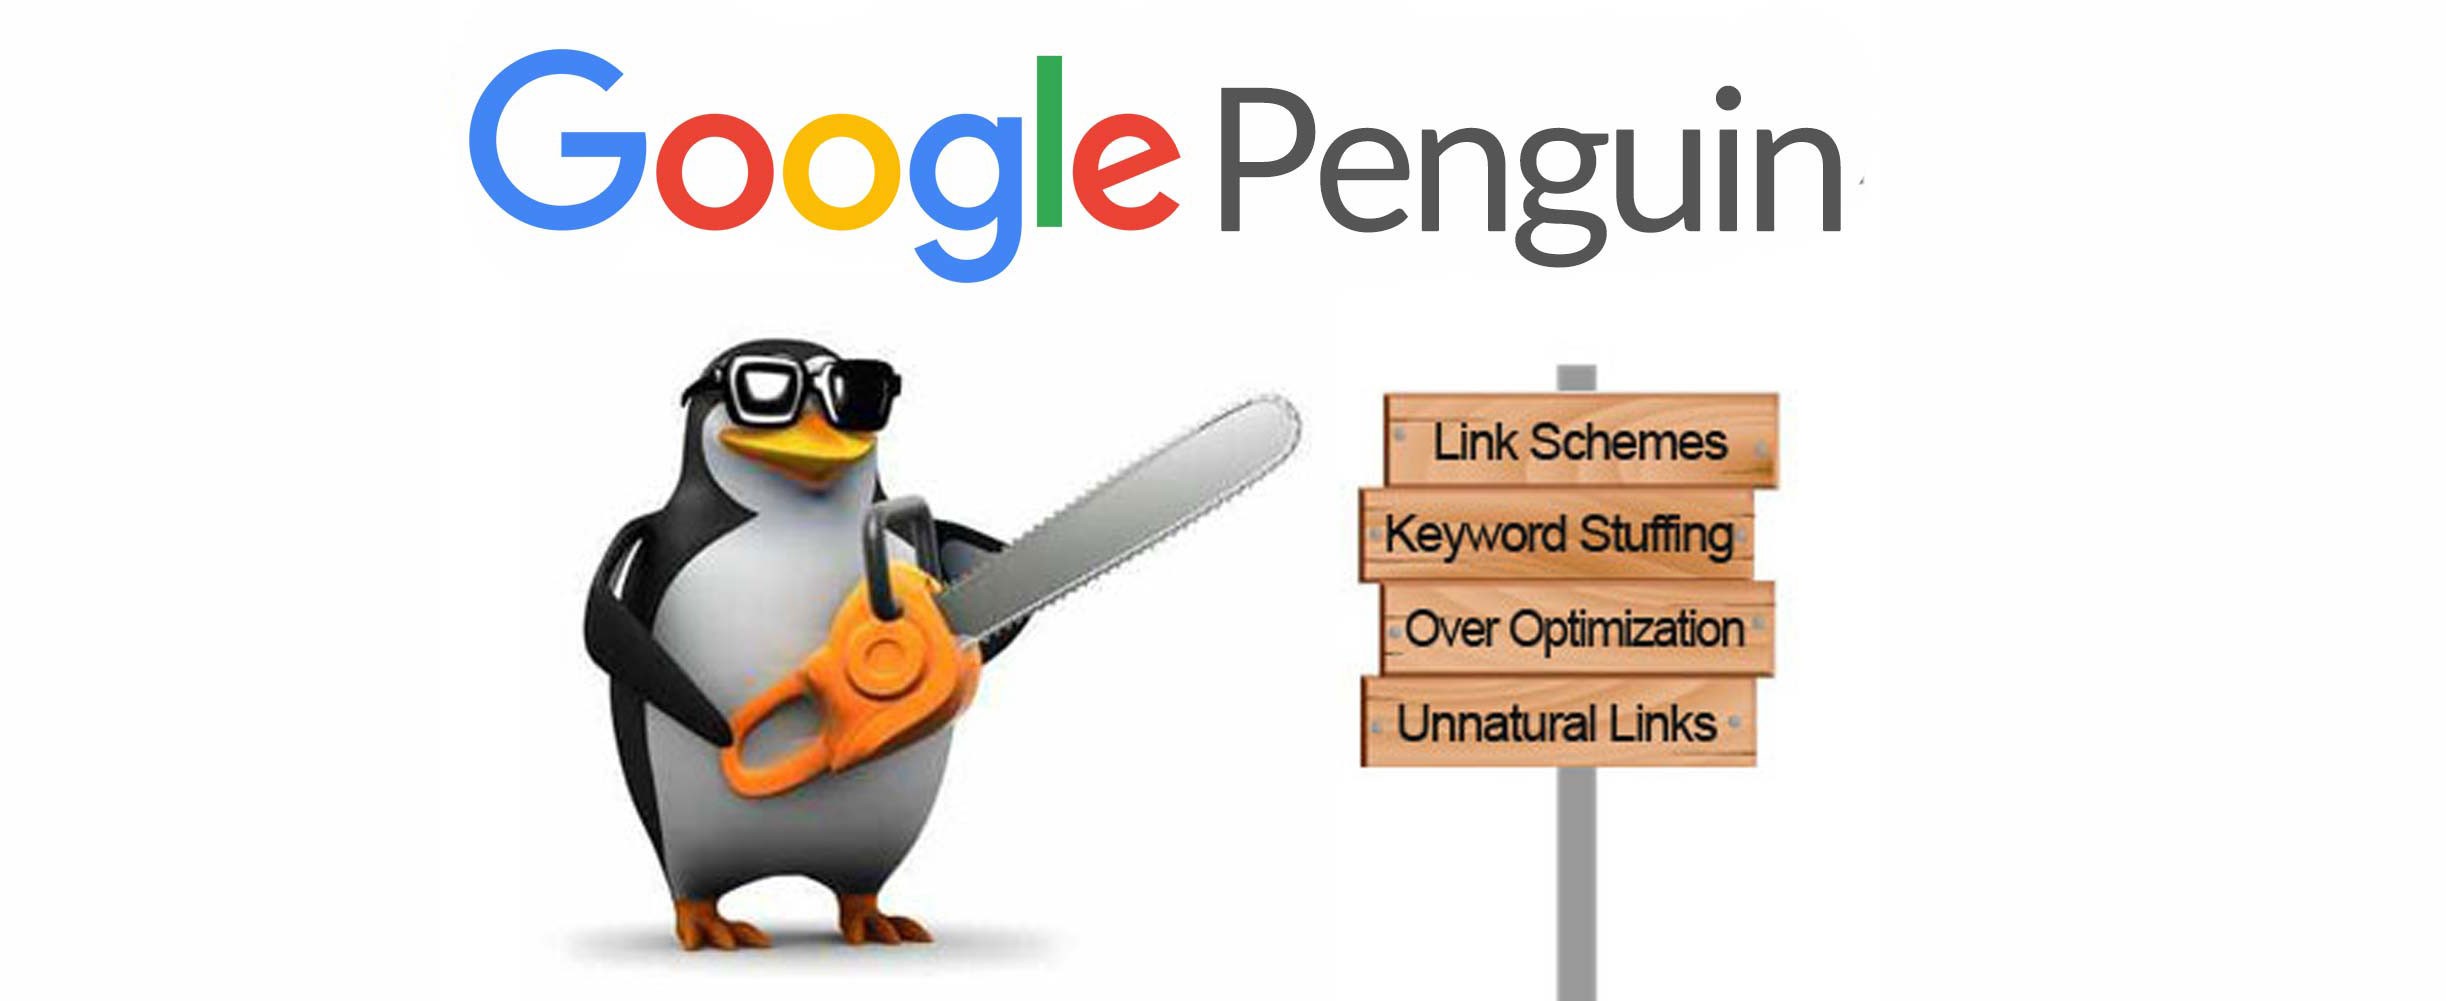 Google-penguin.jpg